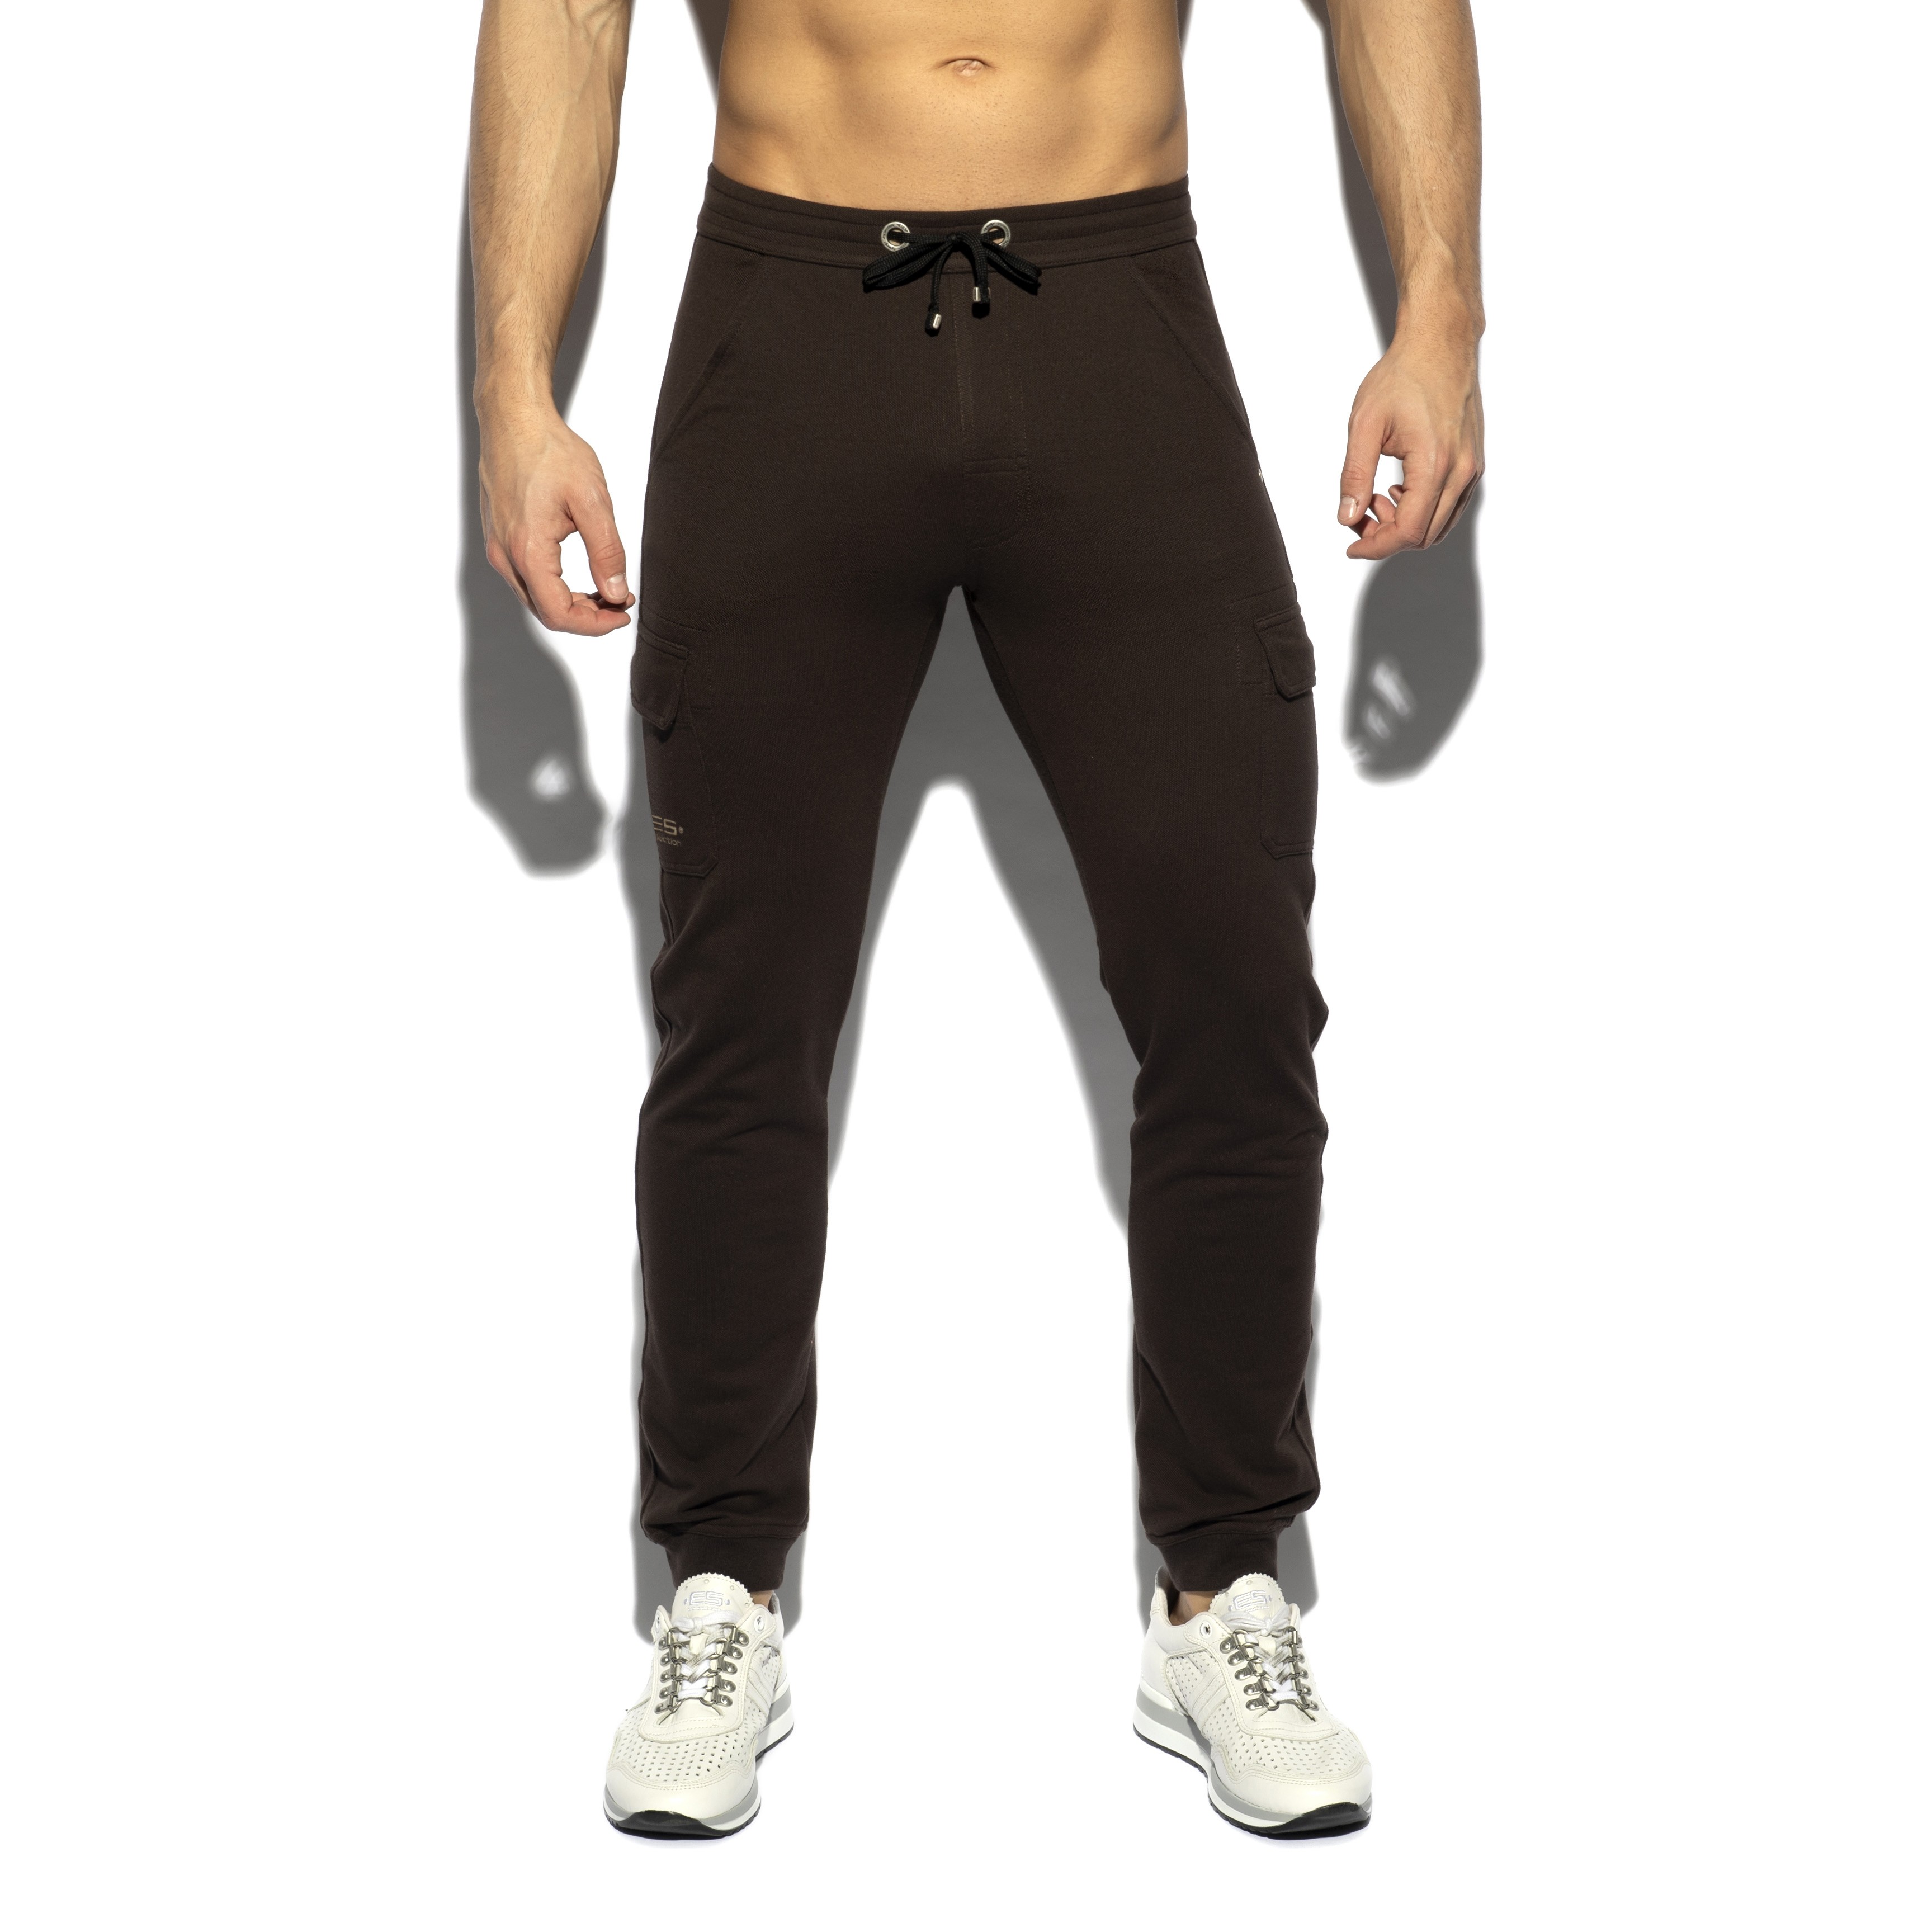 Pique - brown trousers - ES collection : sale of Pants for men ES c